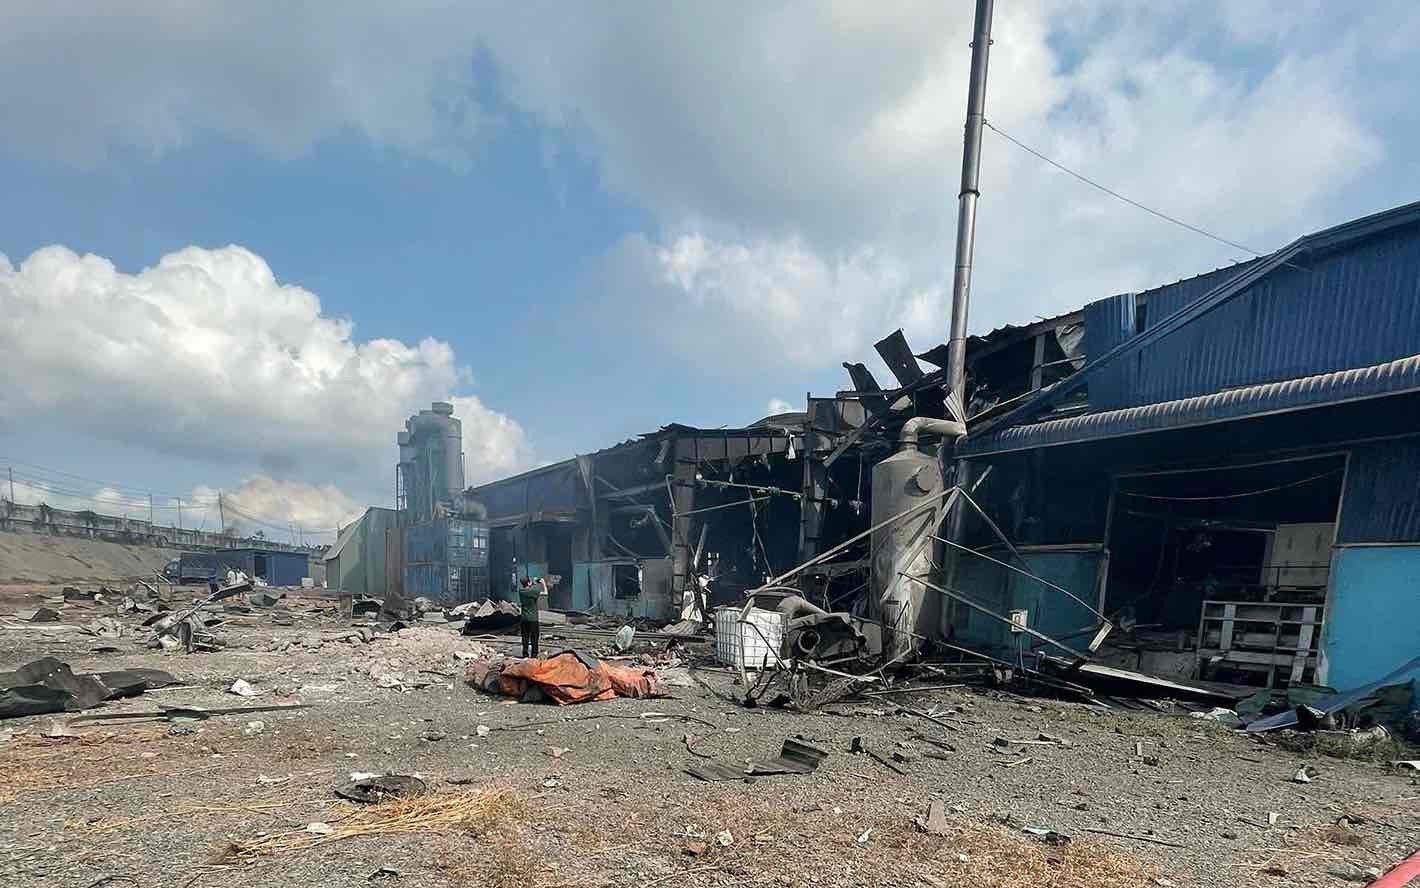 Công an tỉnh Đồng Nai chính thức thông tin vụ nổ lò hơi khiến 6 người chết